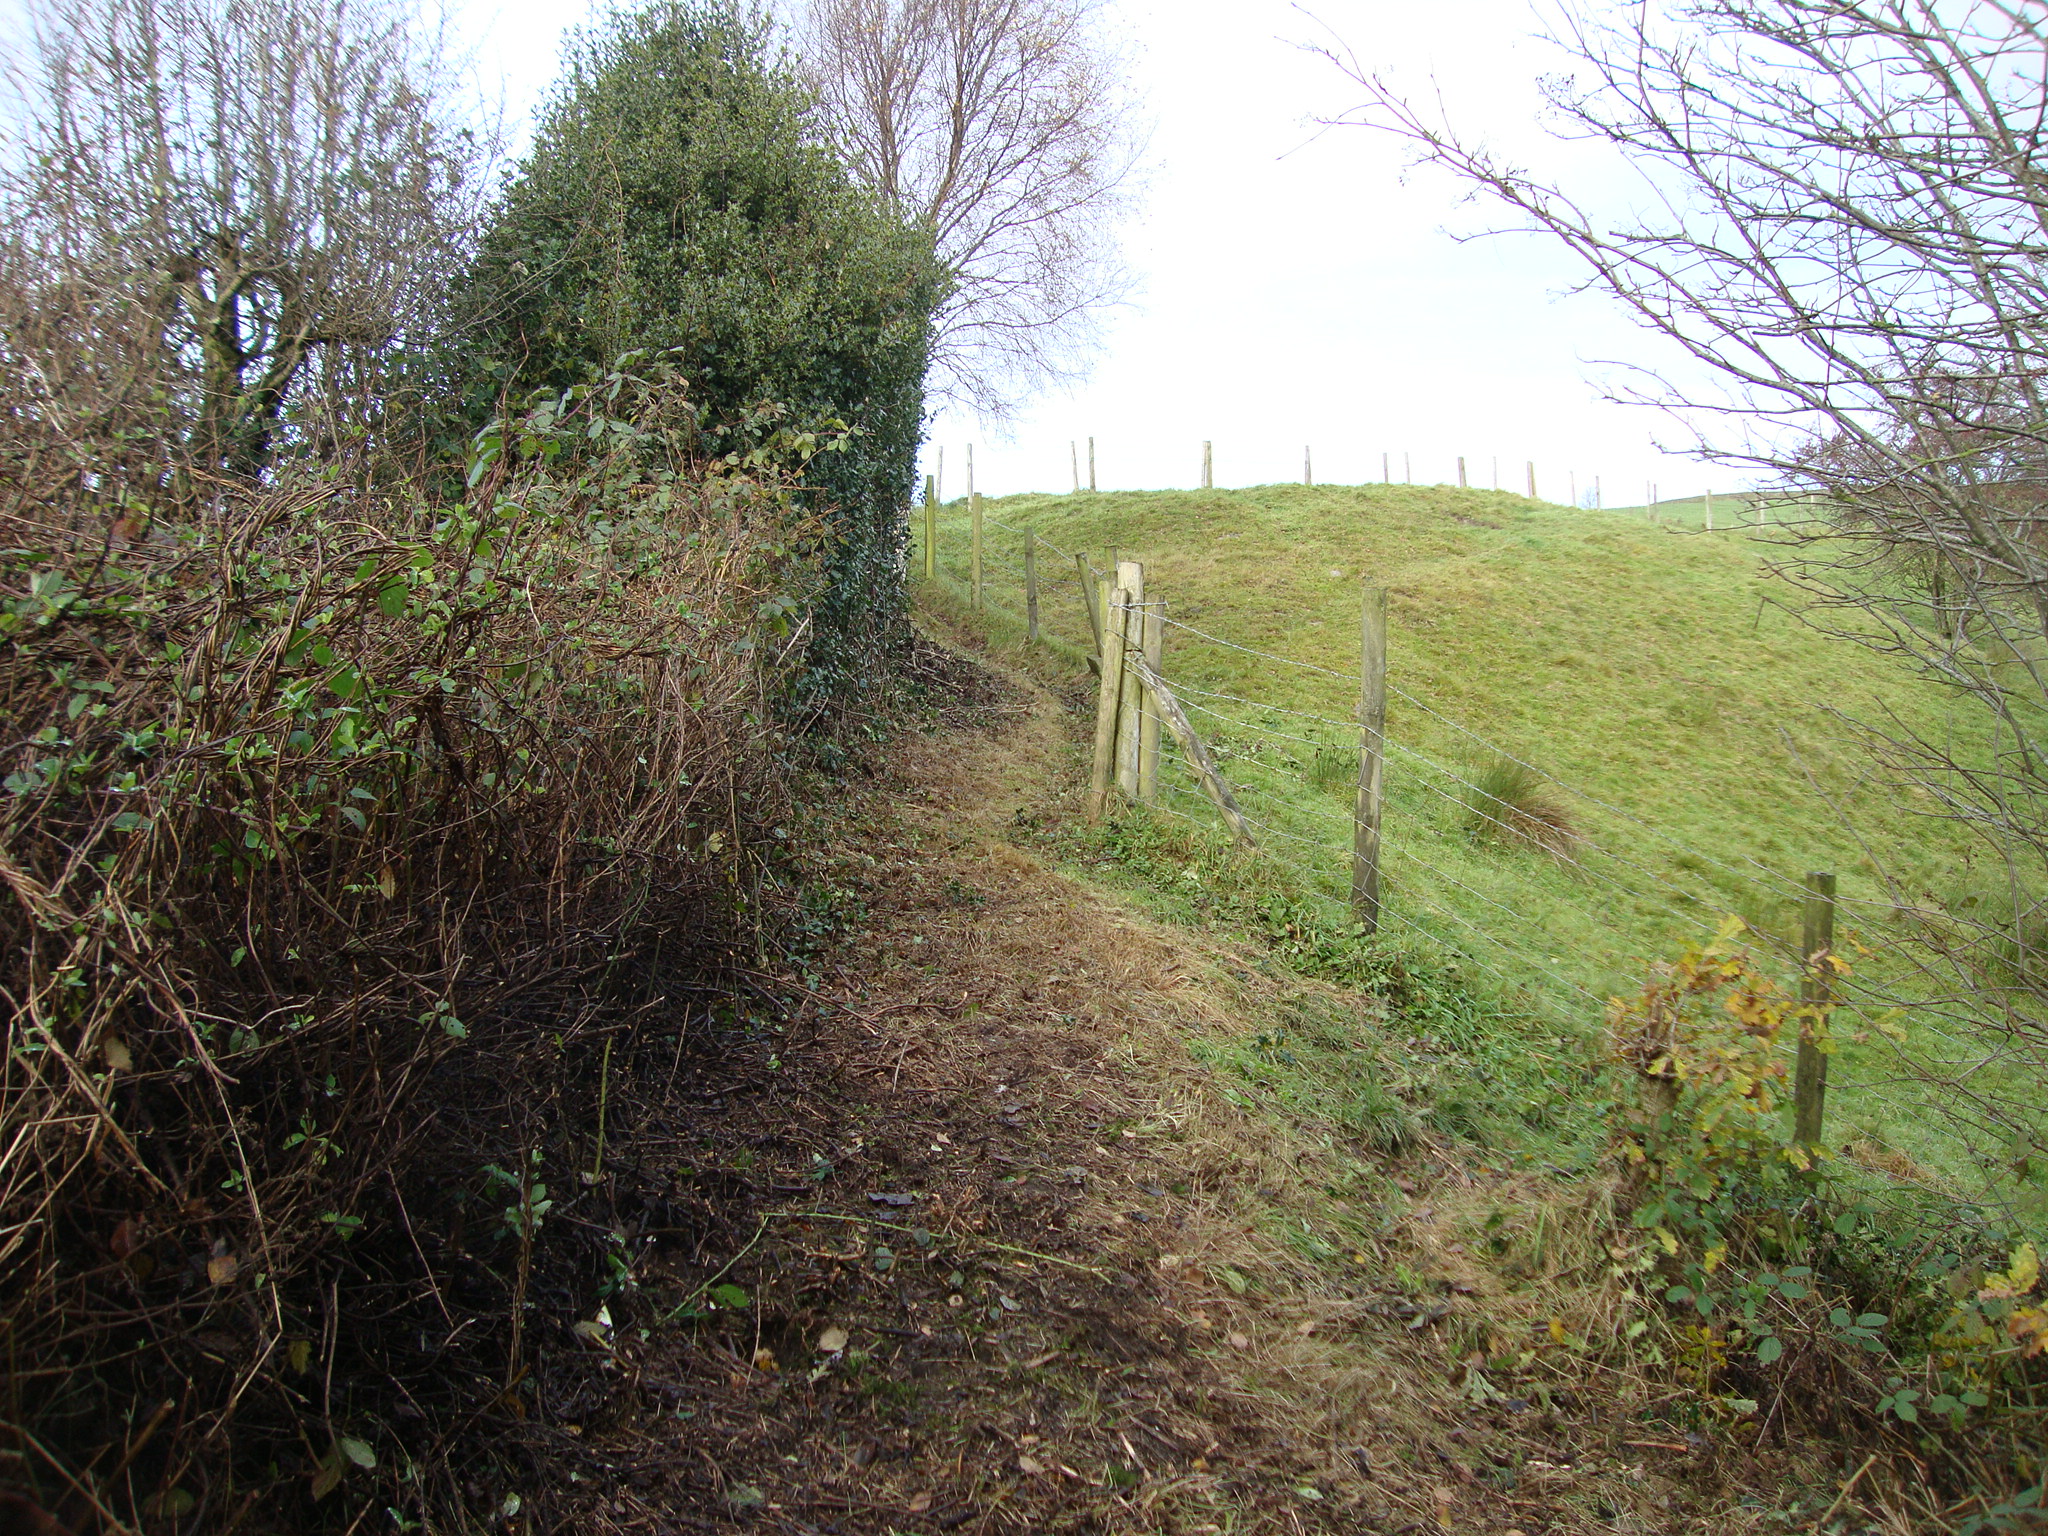 Wilpshire Glen Path after improvement